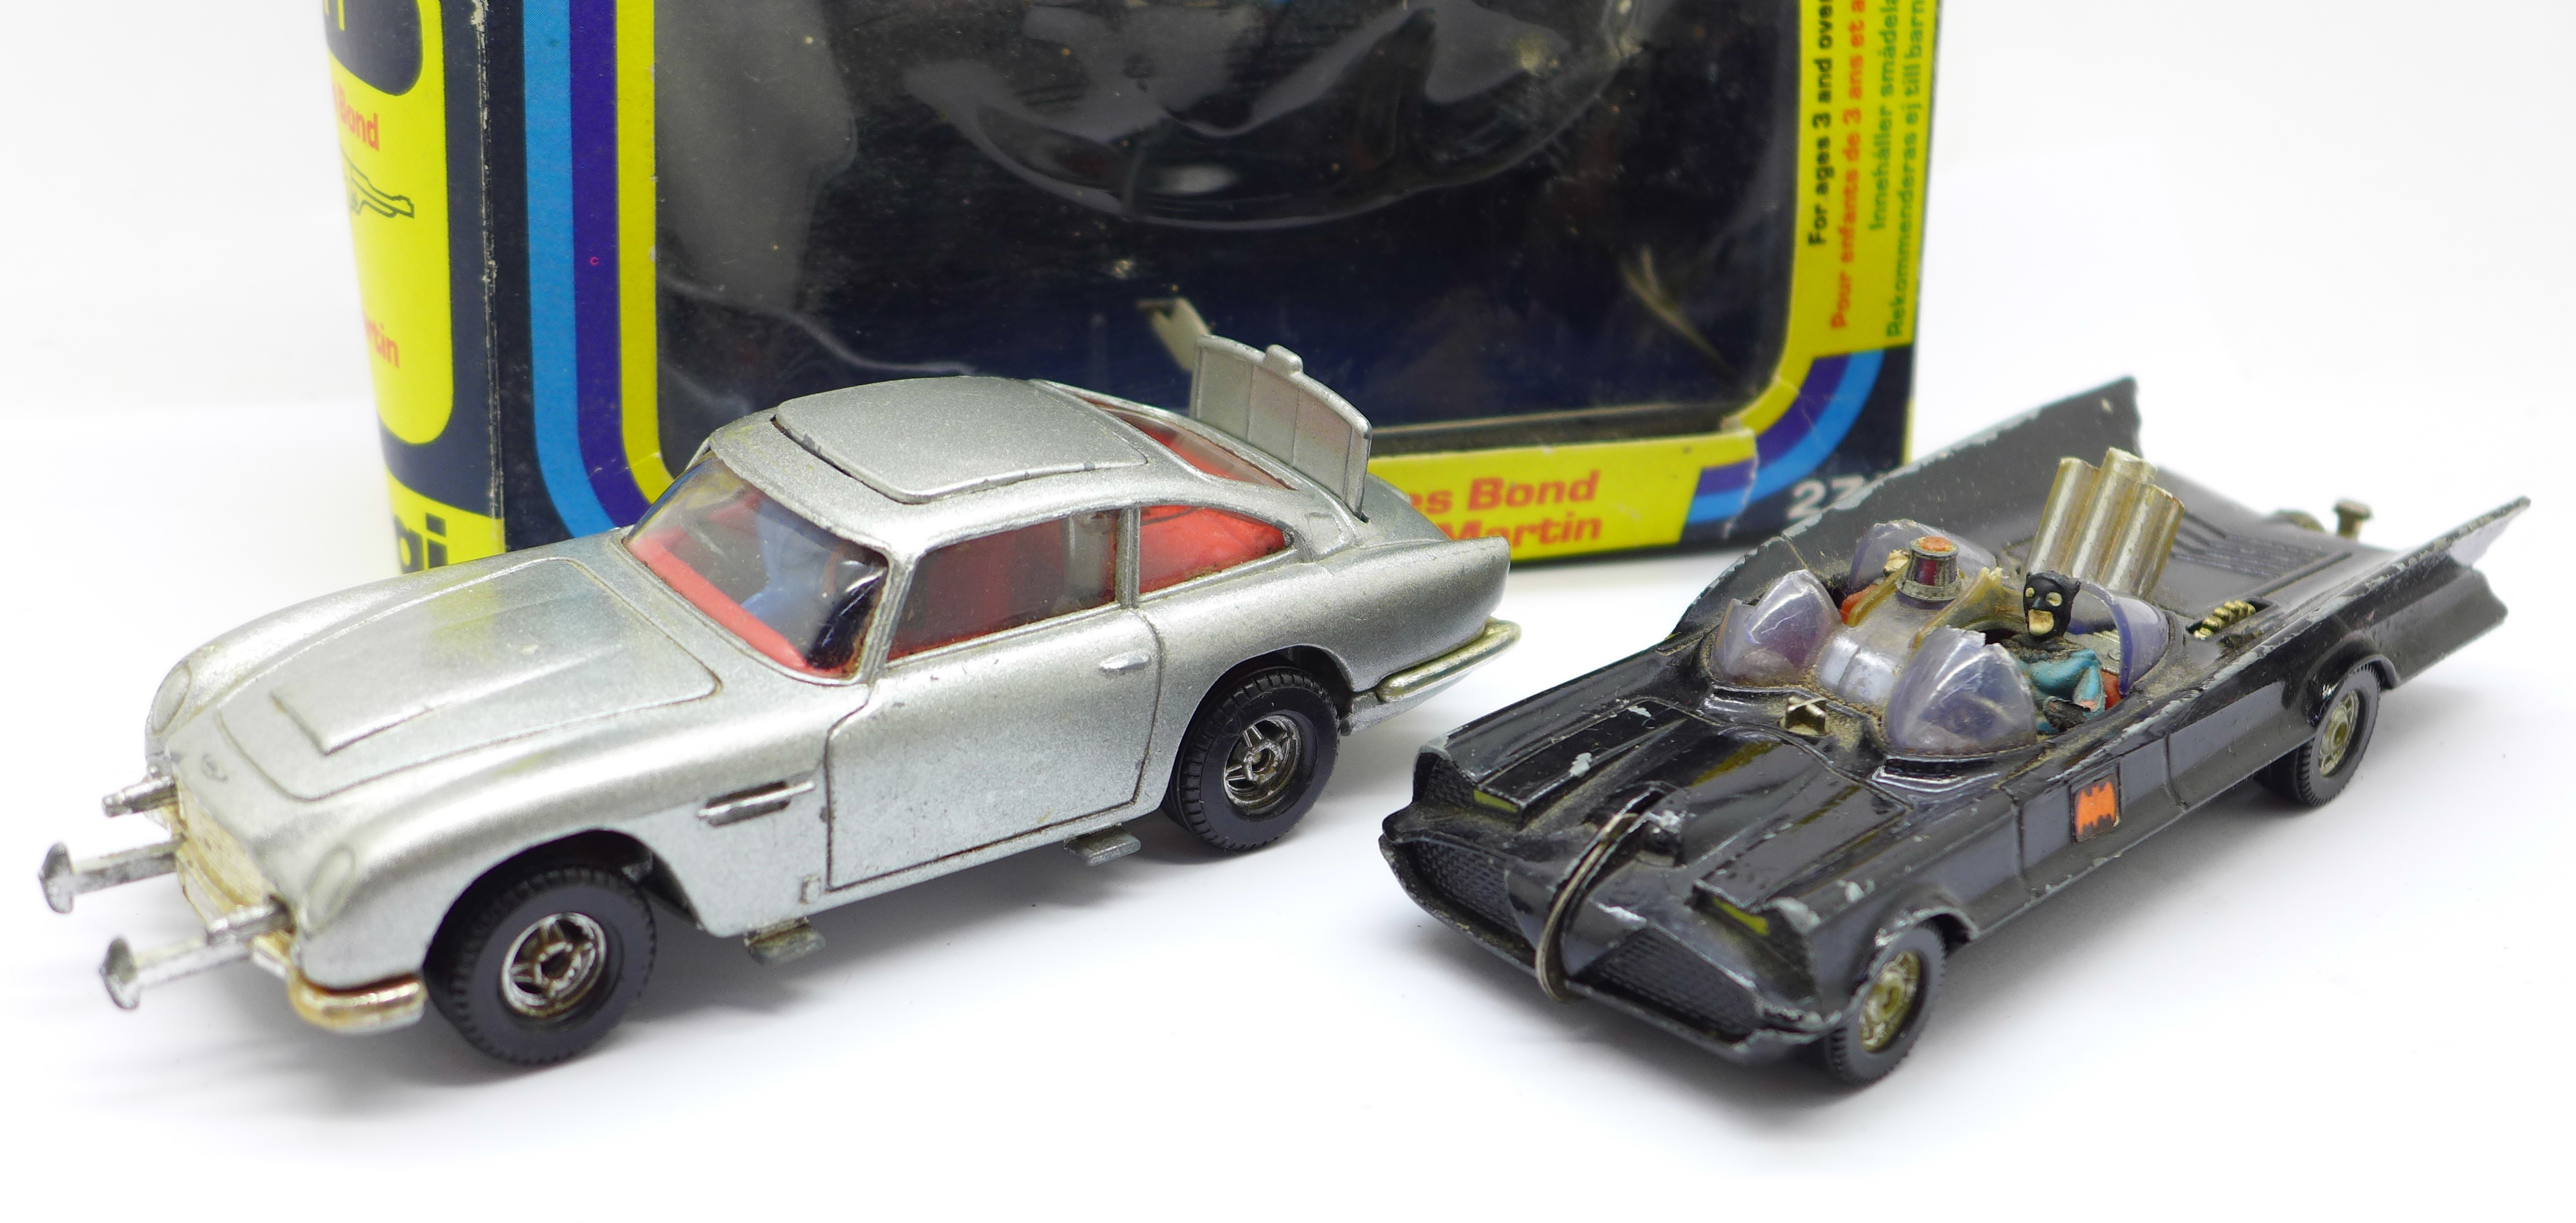 A Corgi 271 James Bond Aston Martin car, boxed, and a Corgi Toys Batman Batmobile - Image 2 of 5